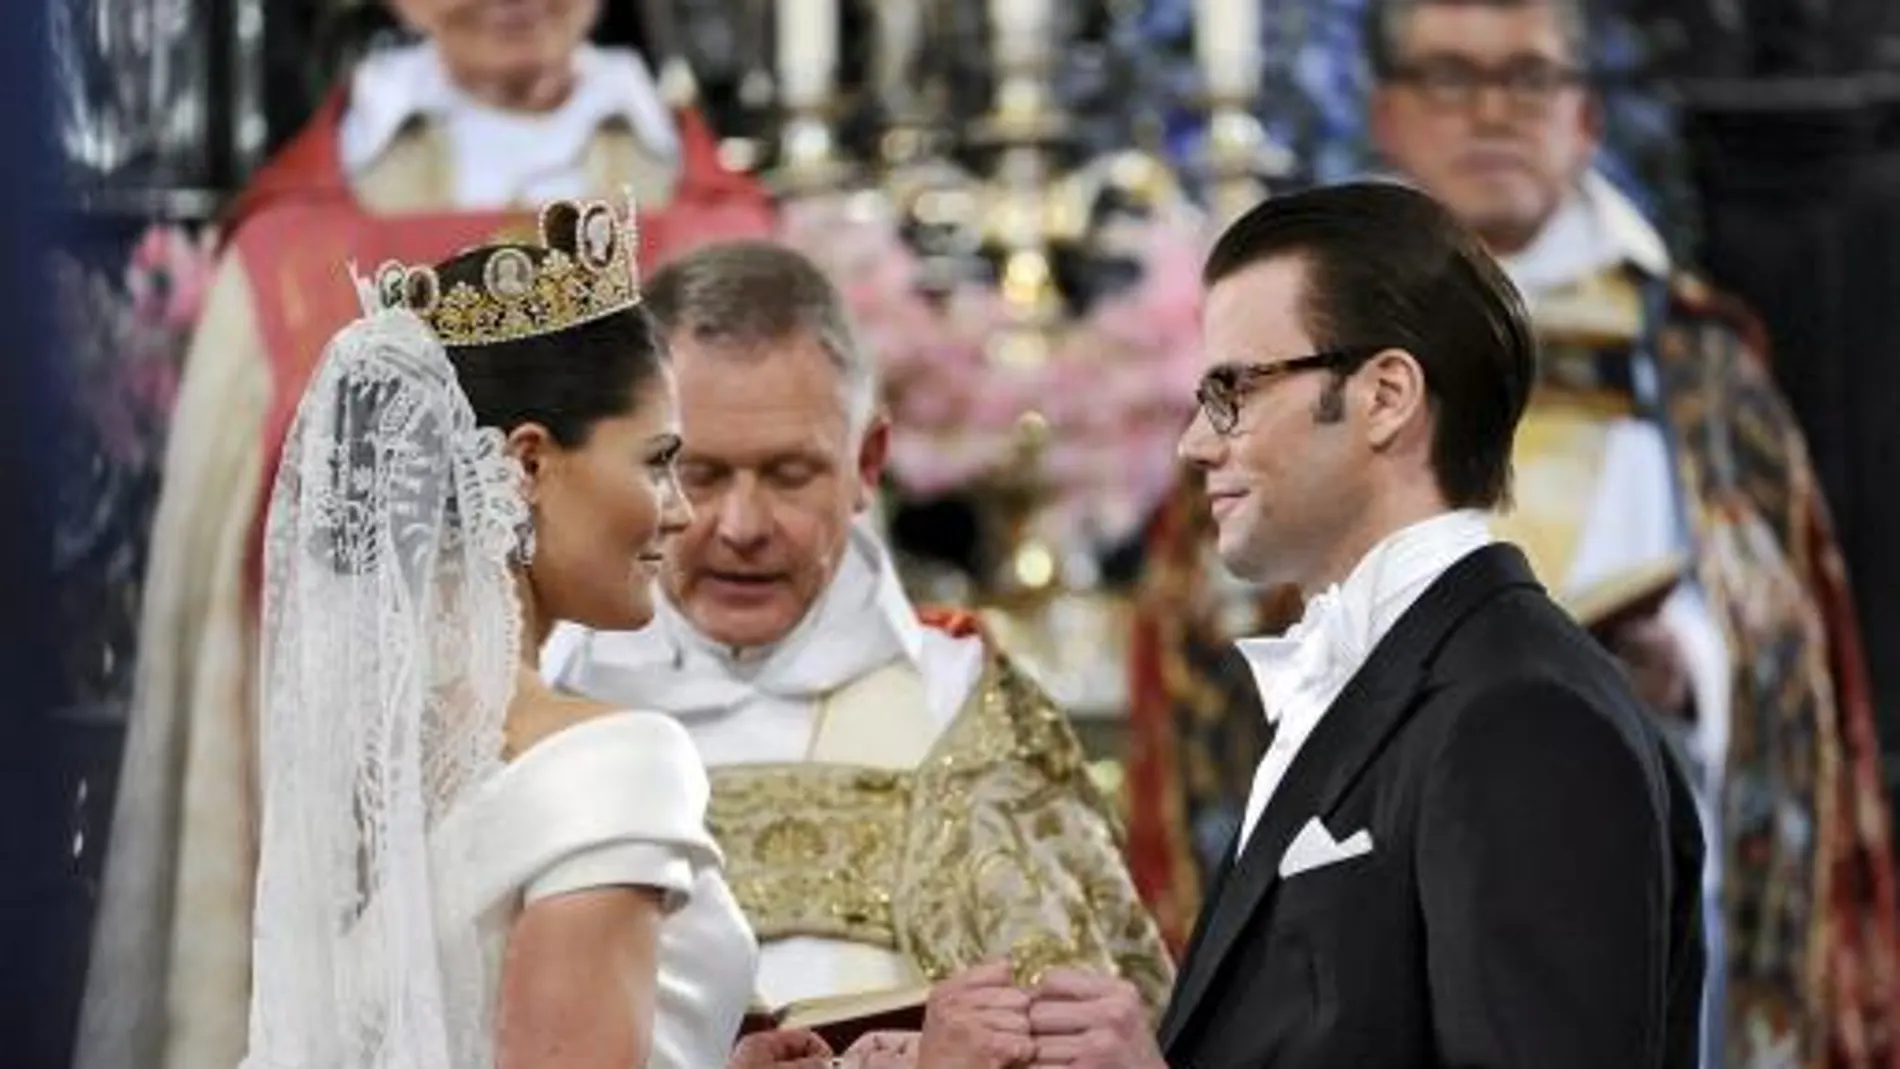 La princesa heredera Victoria de Suecia y Daniel Westling atienden durante la ceremonia religiosa en la que han contraído matrimonio